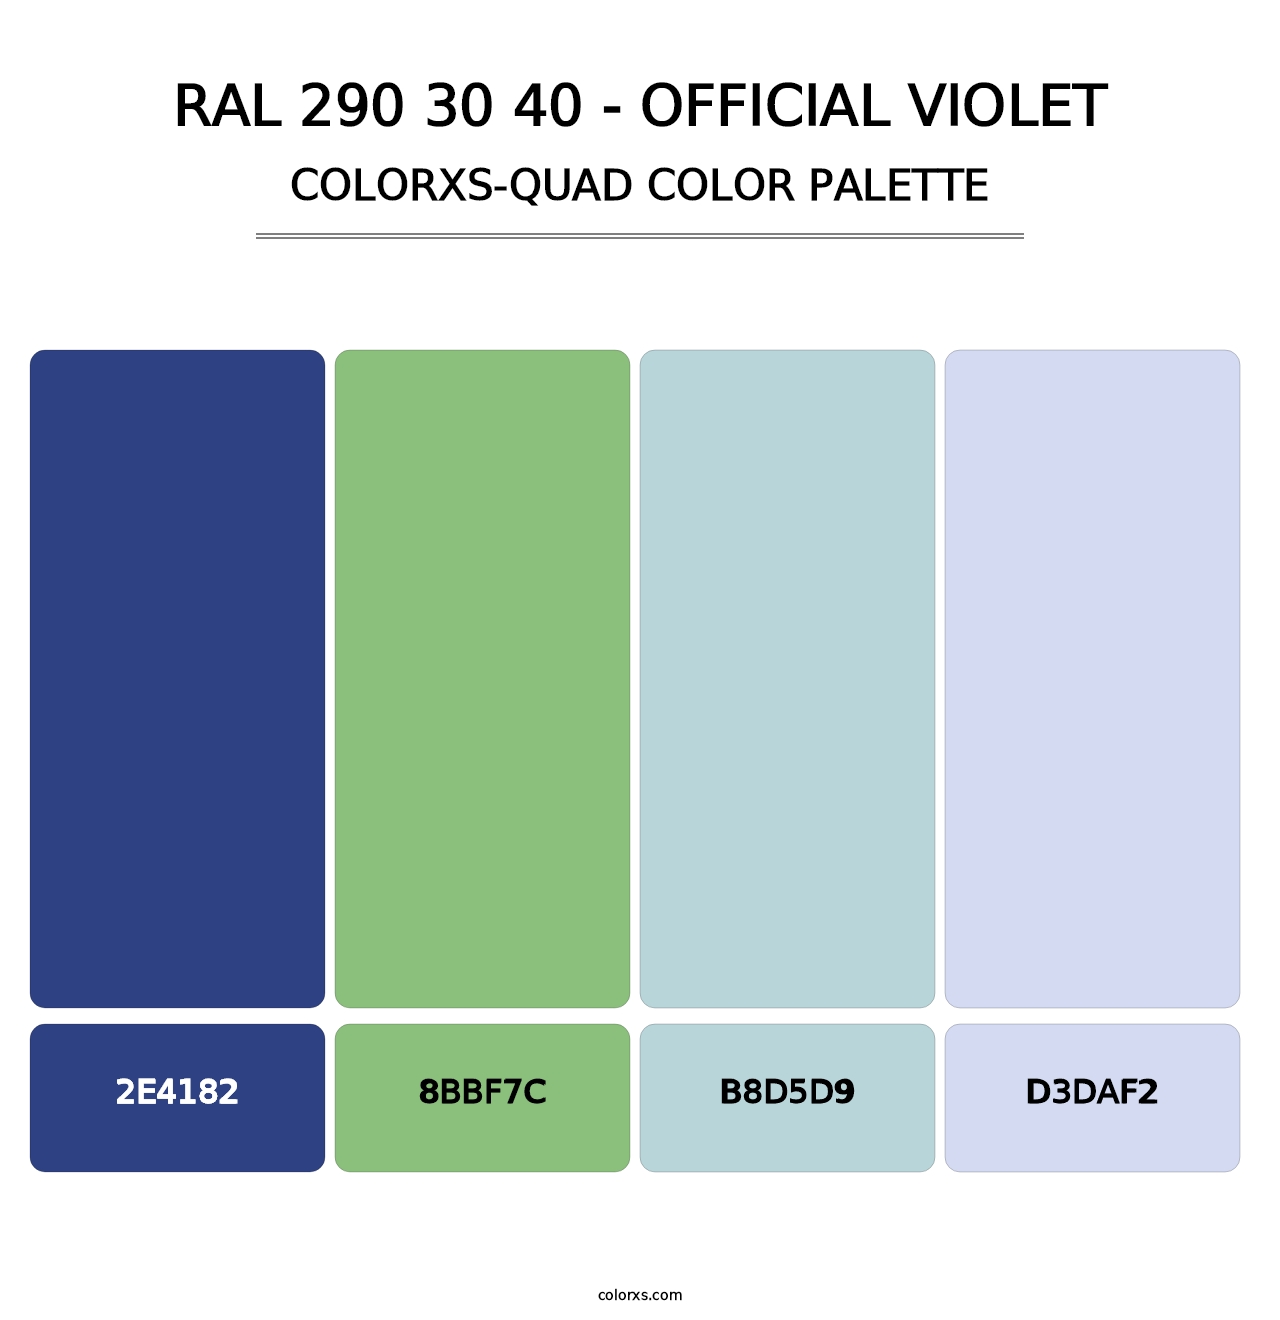 RAL 290 30 40 - Official Violet - Colorxs Quad Palette